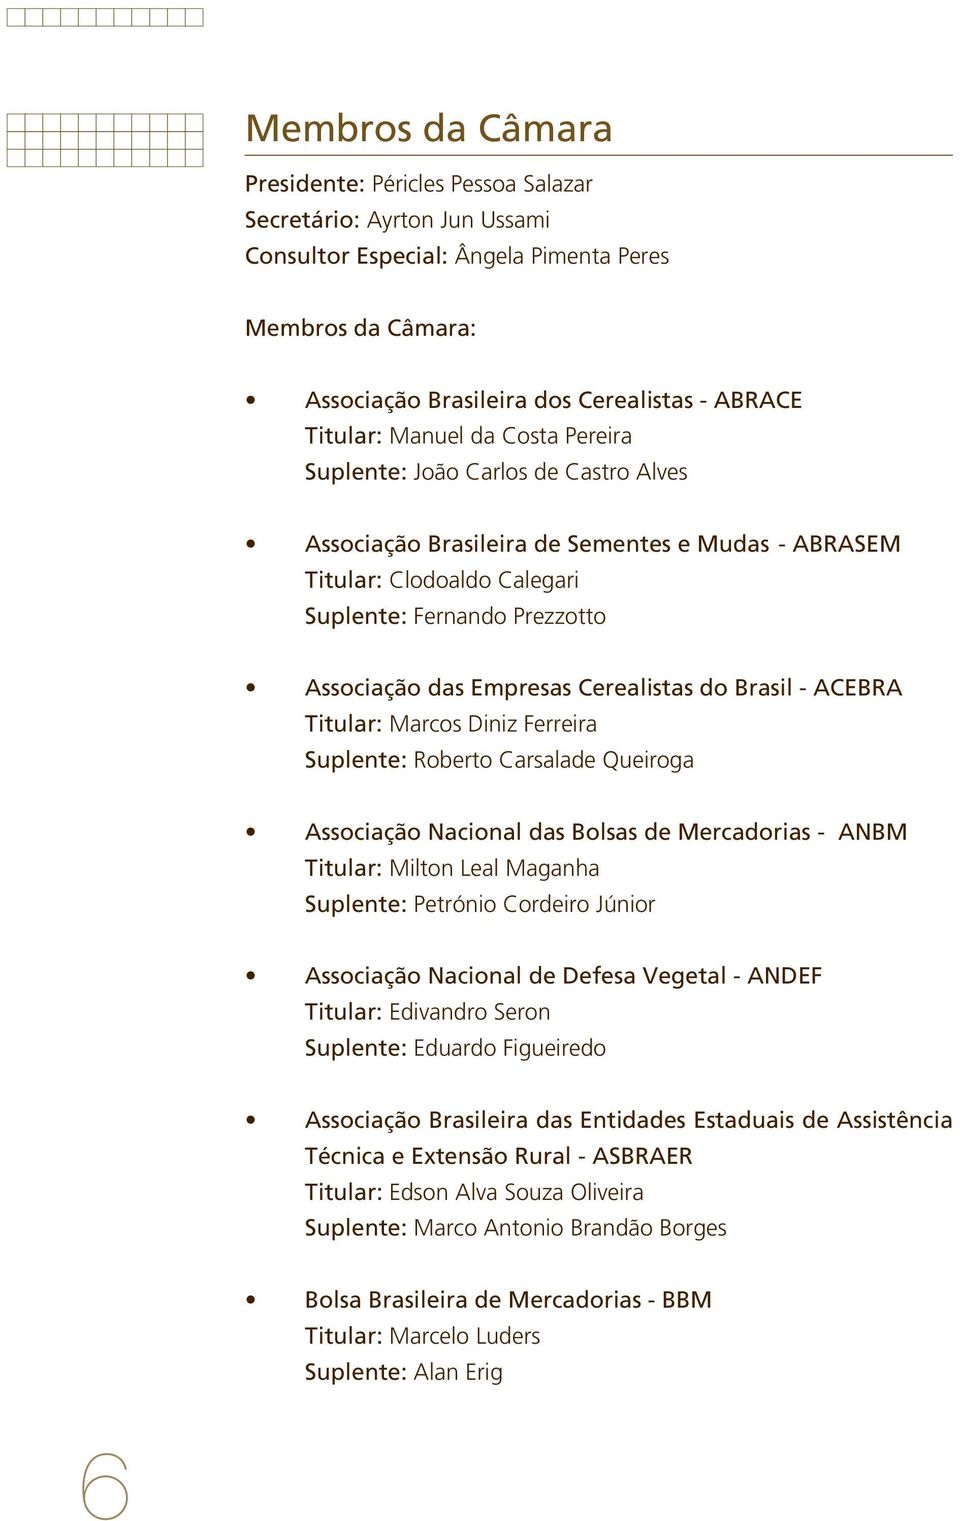 Cerealistas do Brasil - ACEBRA Titular: Marcos Diniz Ferreira Suplente: Roberto Carsalade Queiroga Associação Nacional das Bolsas de Mercadorias - ANBM Titular: Milton Leal Maganha Suplente: Petrónio